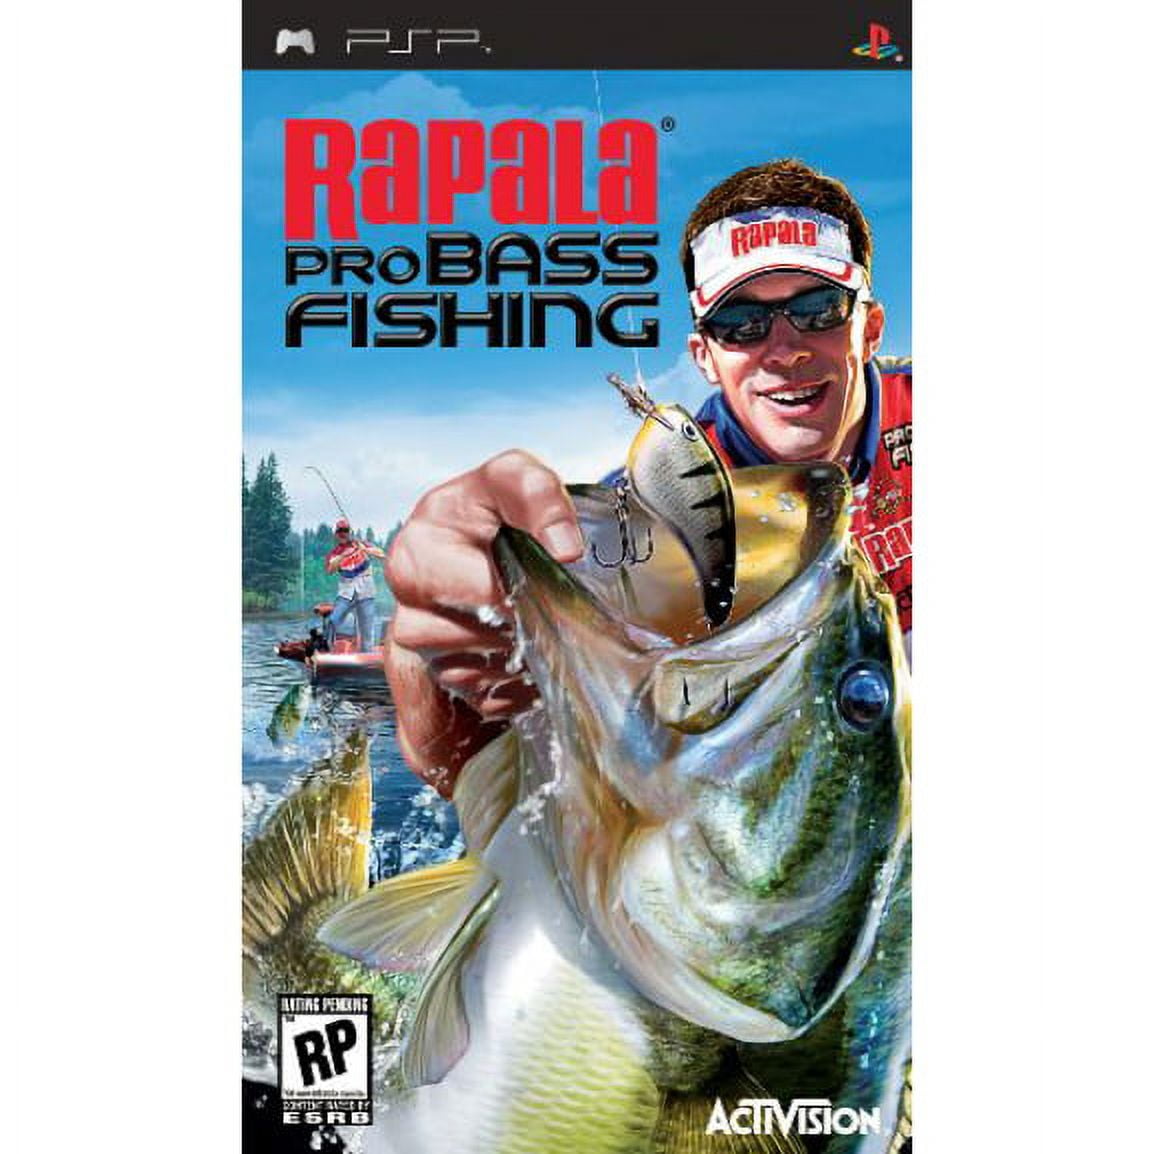 Jogo Midia Fisica Rapala Pro Bass Fishing Original para Psp - Activision -  Jogos de Ação - Magazine Luiza